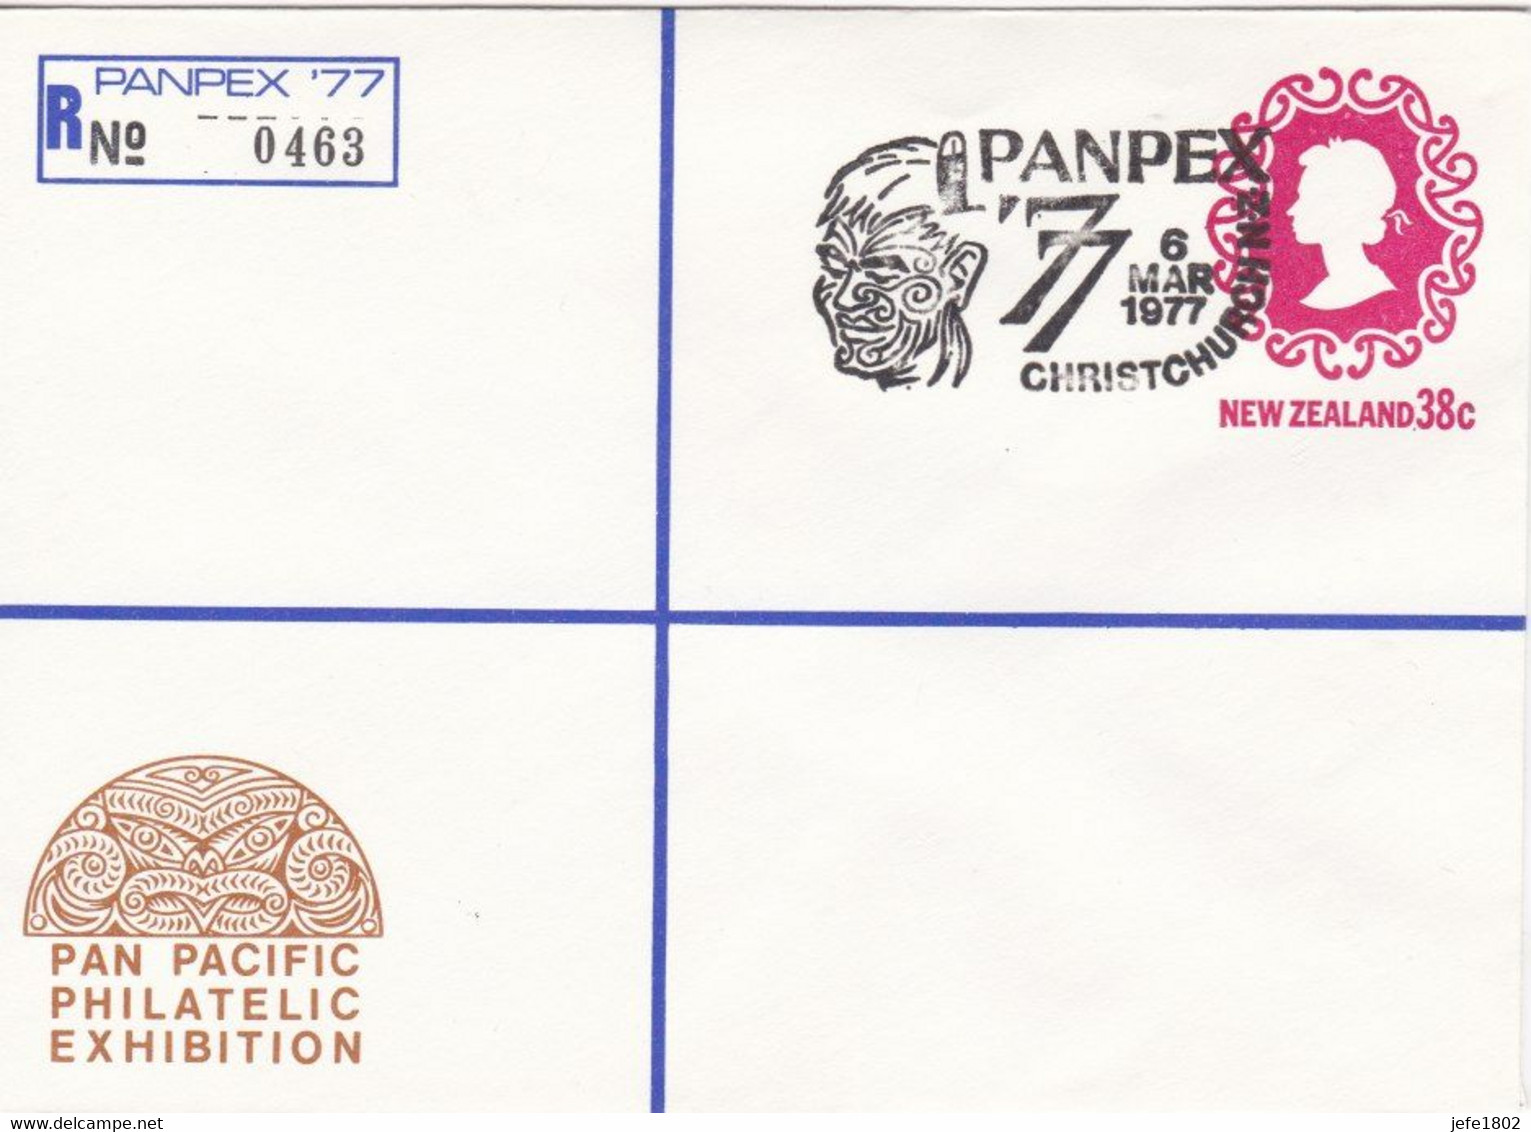 Registered Letter PANPEX '77 - N° 0463 - Tattooed Maori Head - 6 Mar 1977 - Postal Stationery